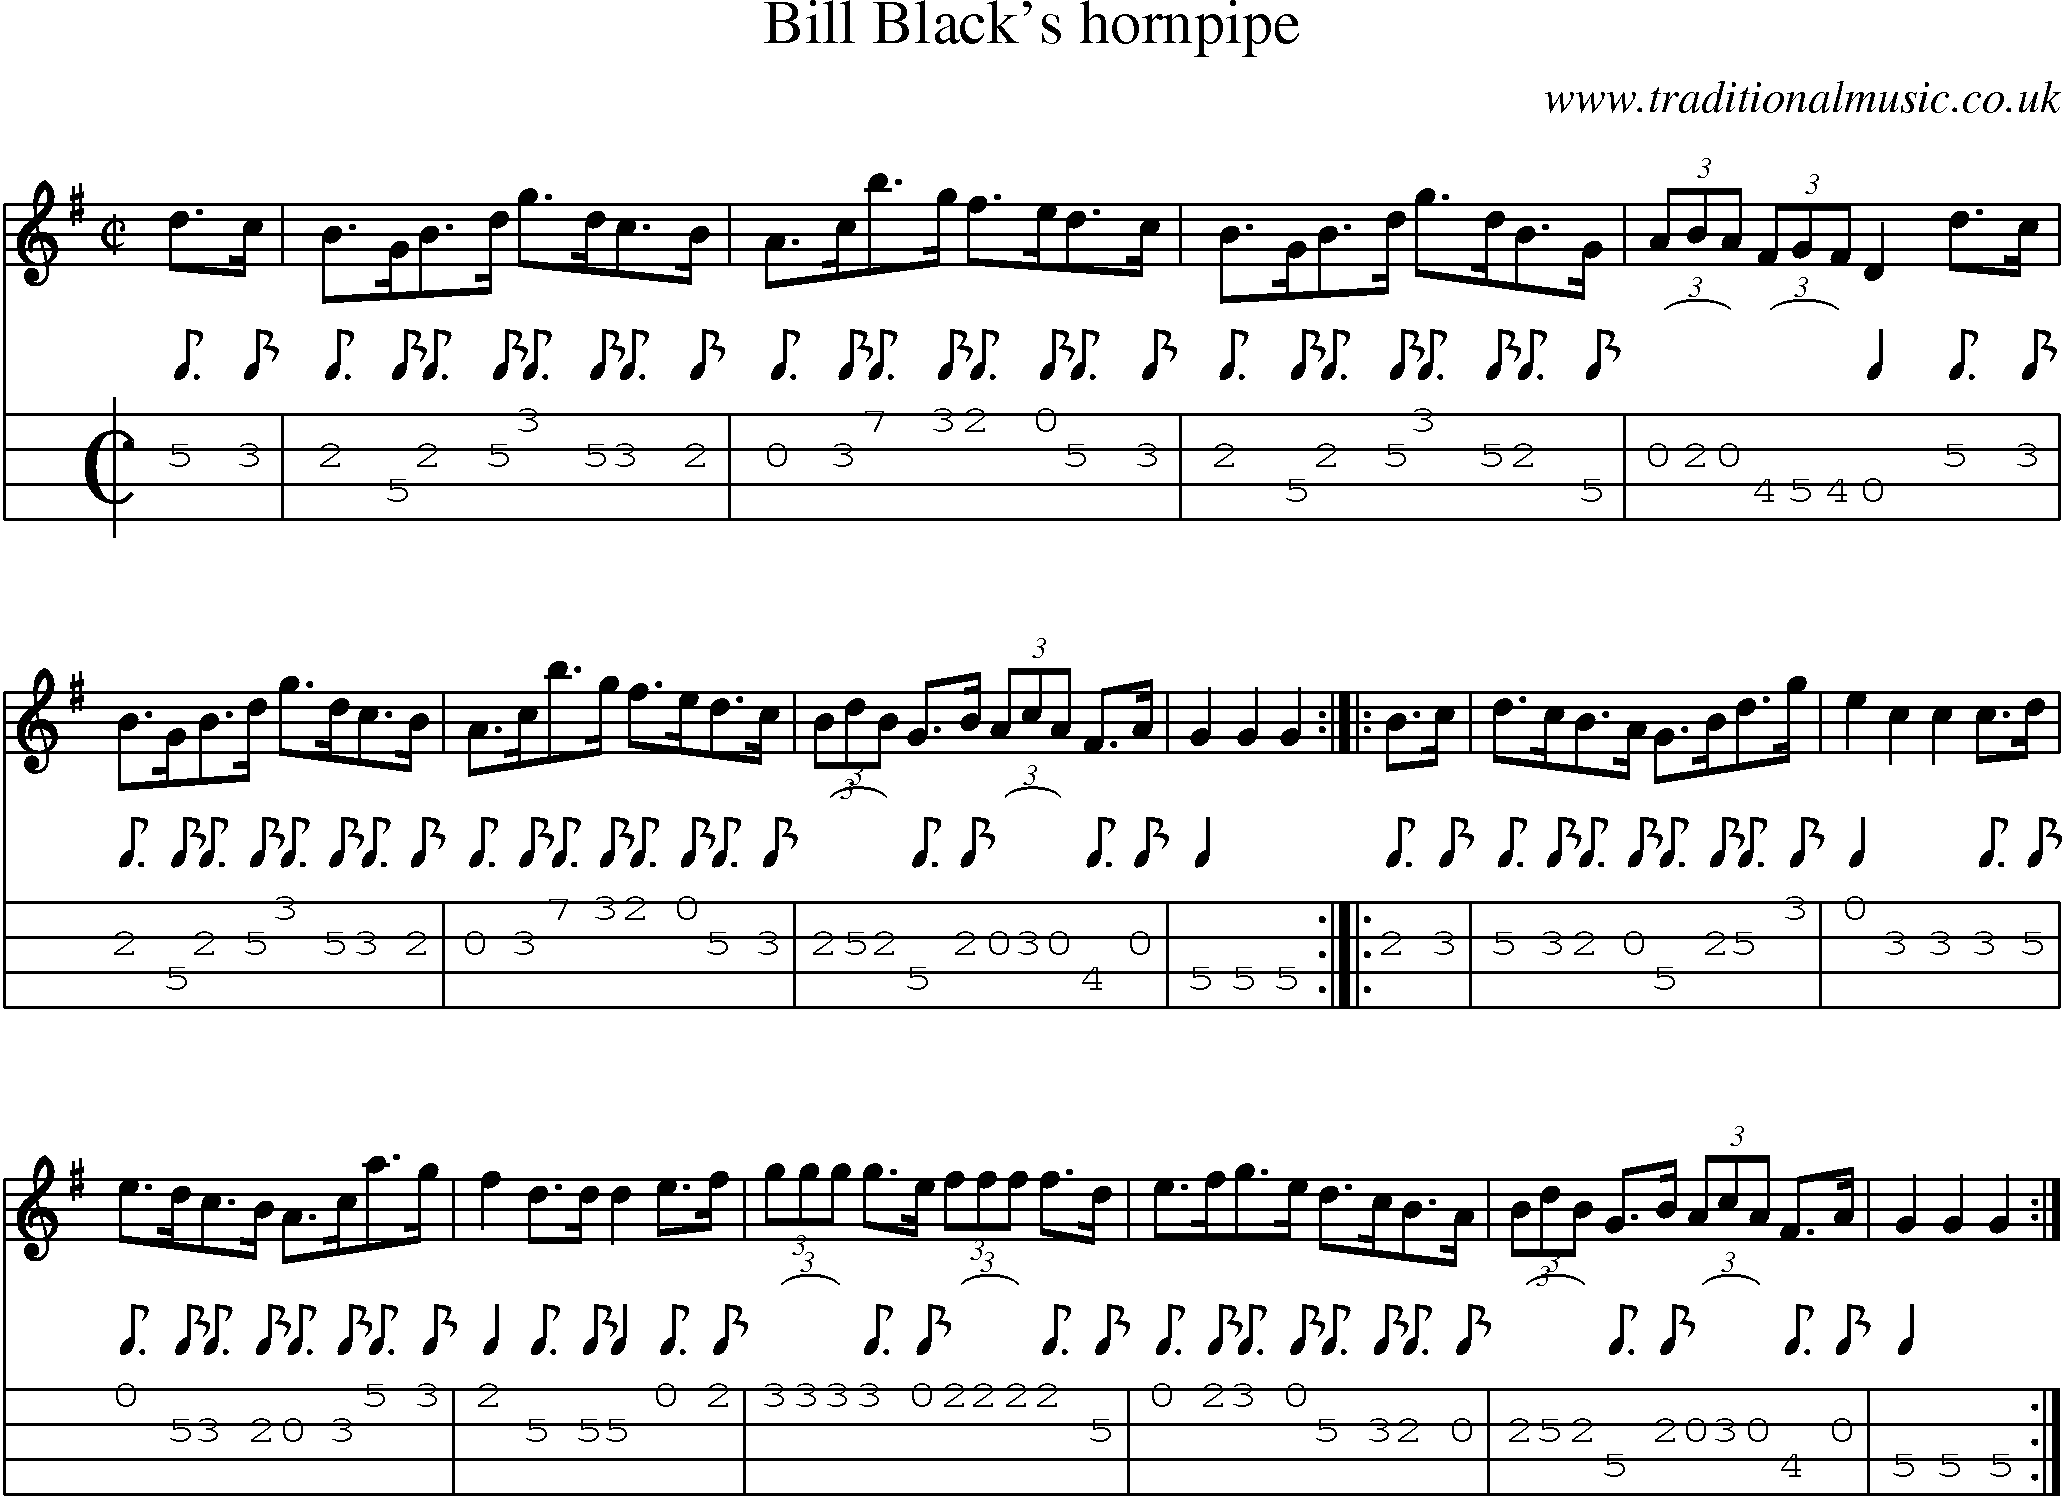 Music Score and Mandolin Tabs for Bill Blacks Hornpipe